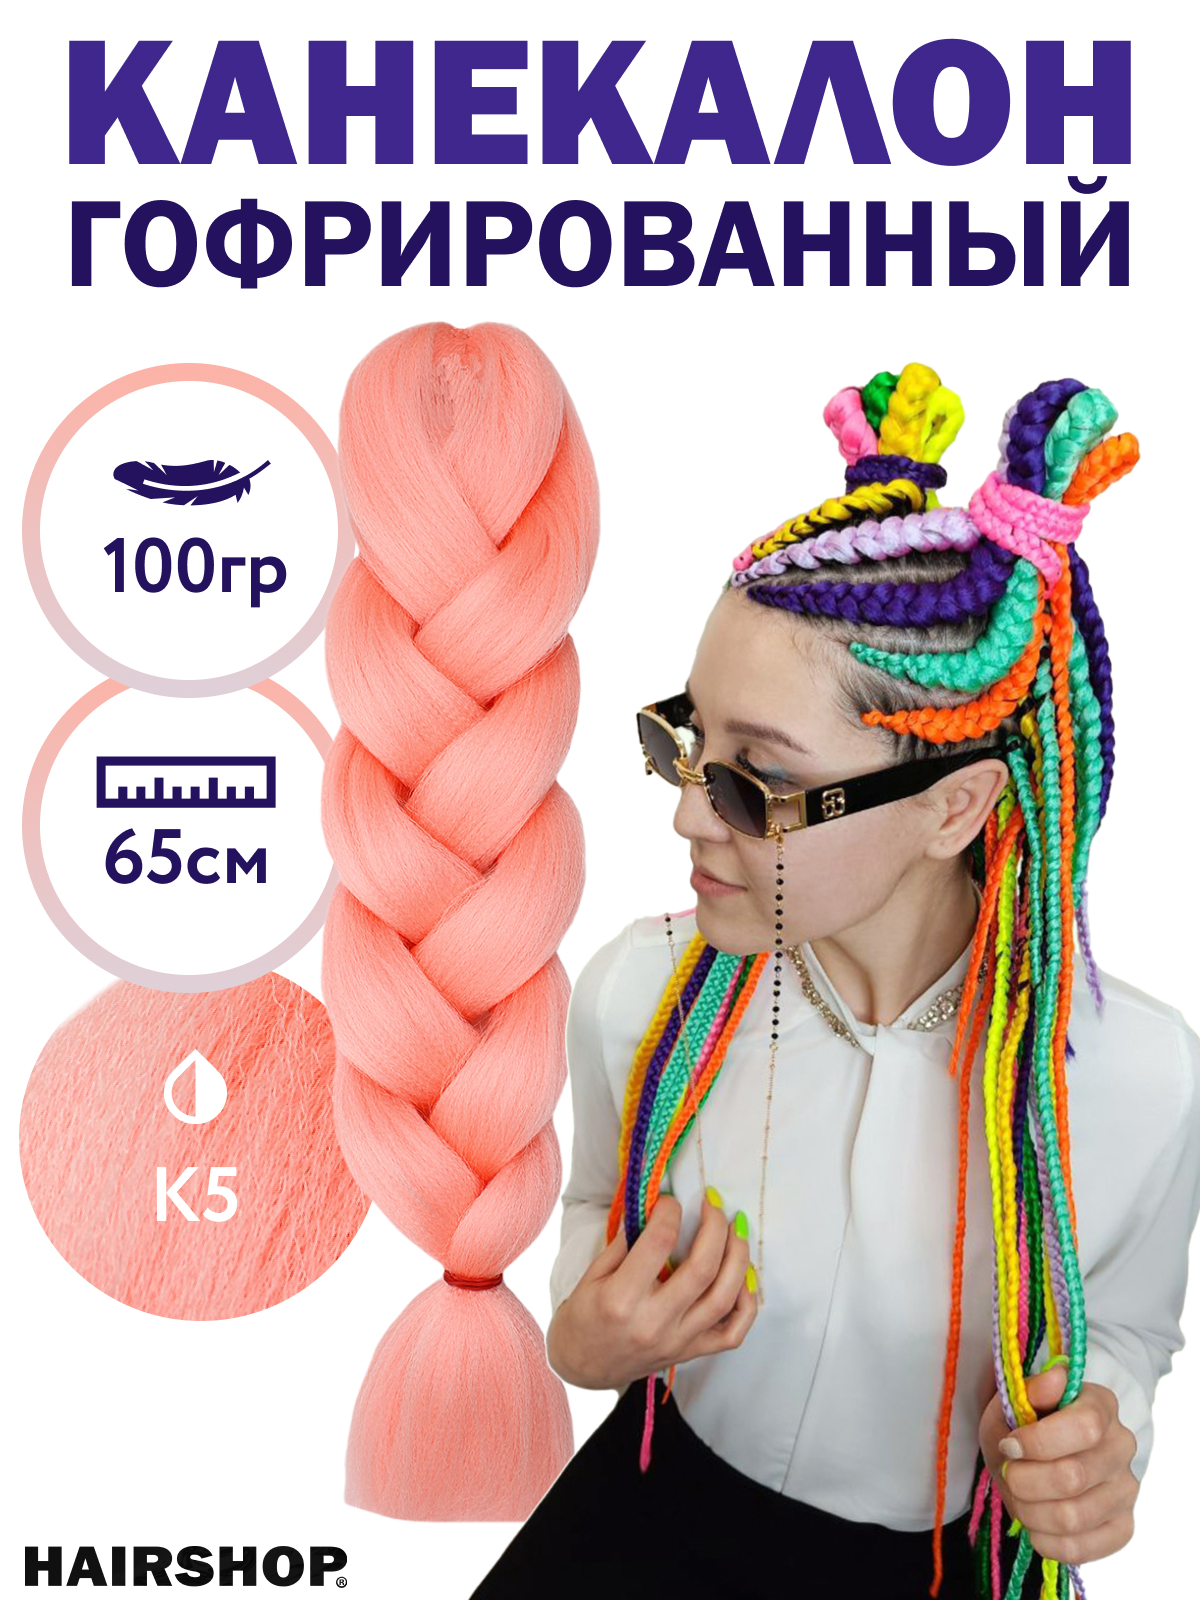 Канекалон Hairshop 2Braids К5 Светло-розовый канекалон queen fair sim braids гофрированный 65 см 90 гр русый розовый белый fr 37